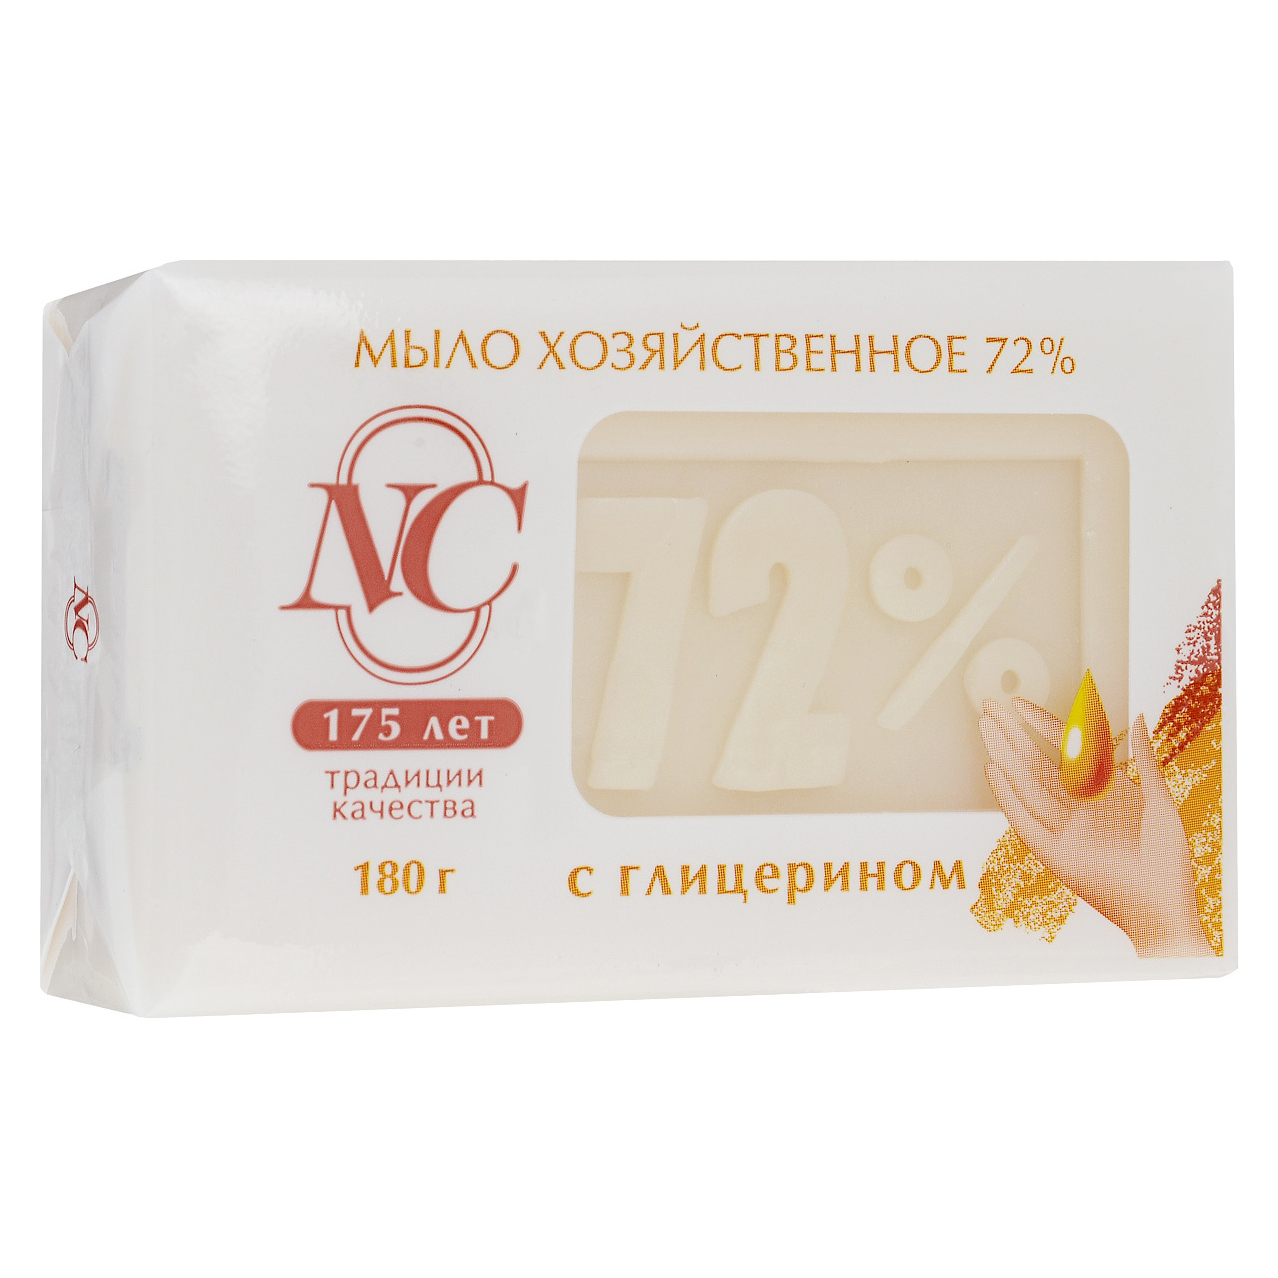 Традиционное хозяйственное мыло Невская косметика 72% с глицерином 180 г мыло хозяйственное аист концентрированное с глицерином 150 гр